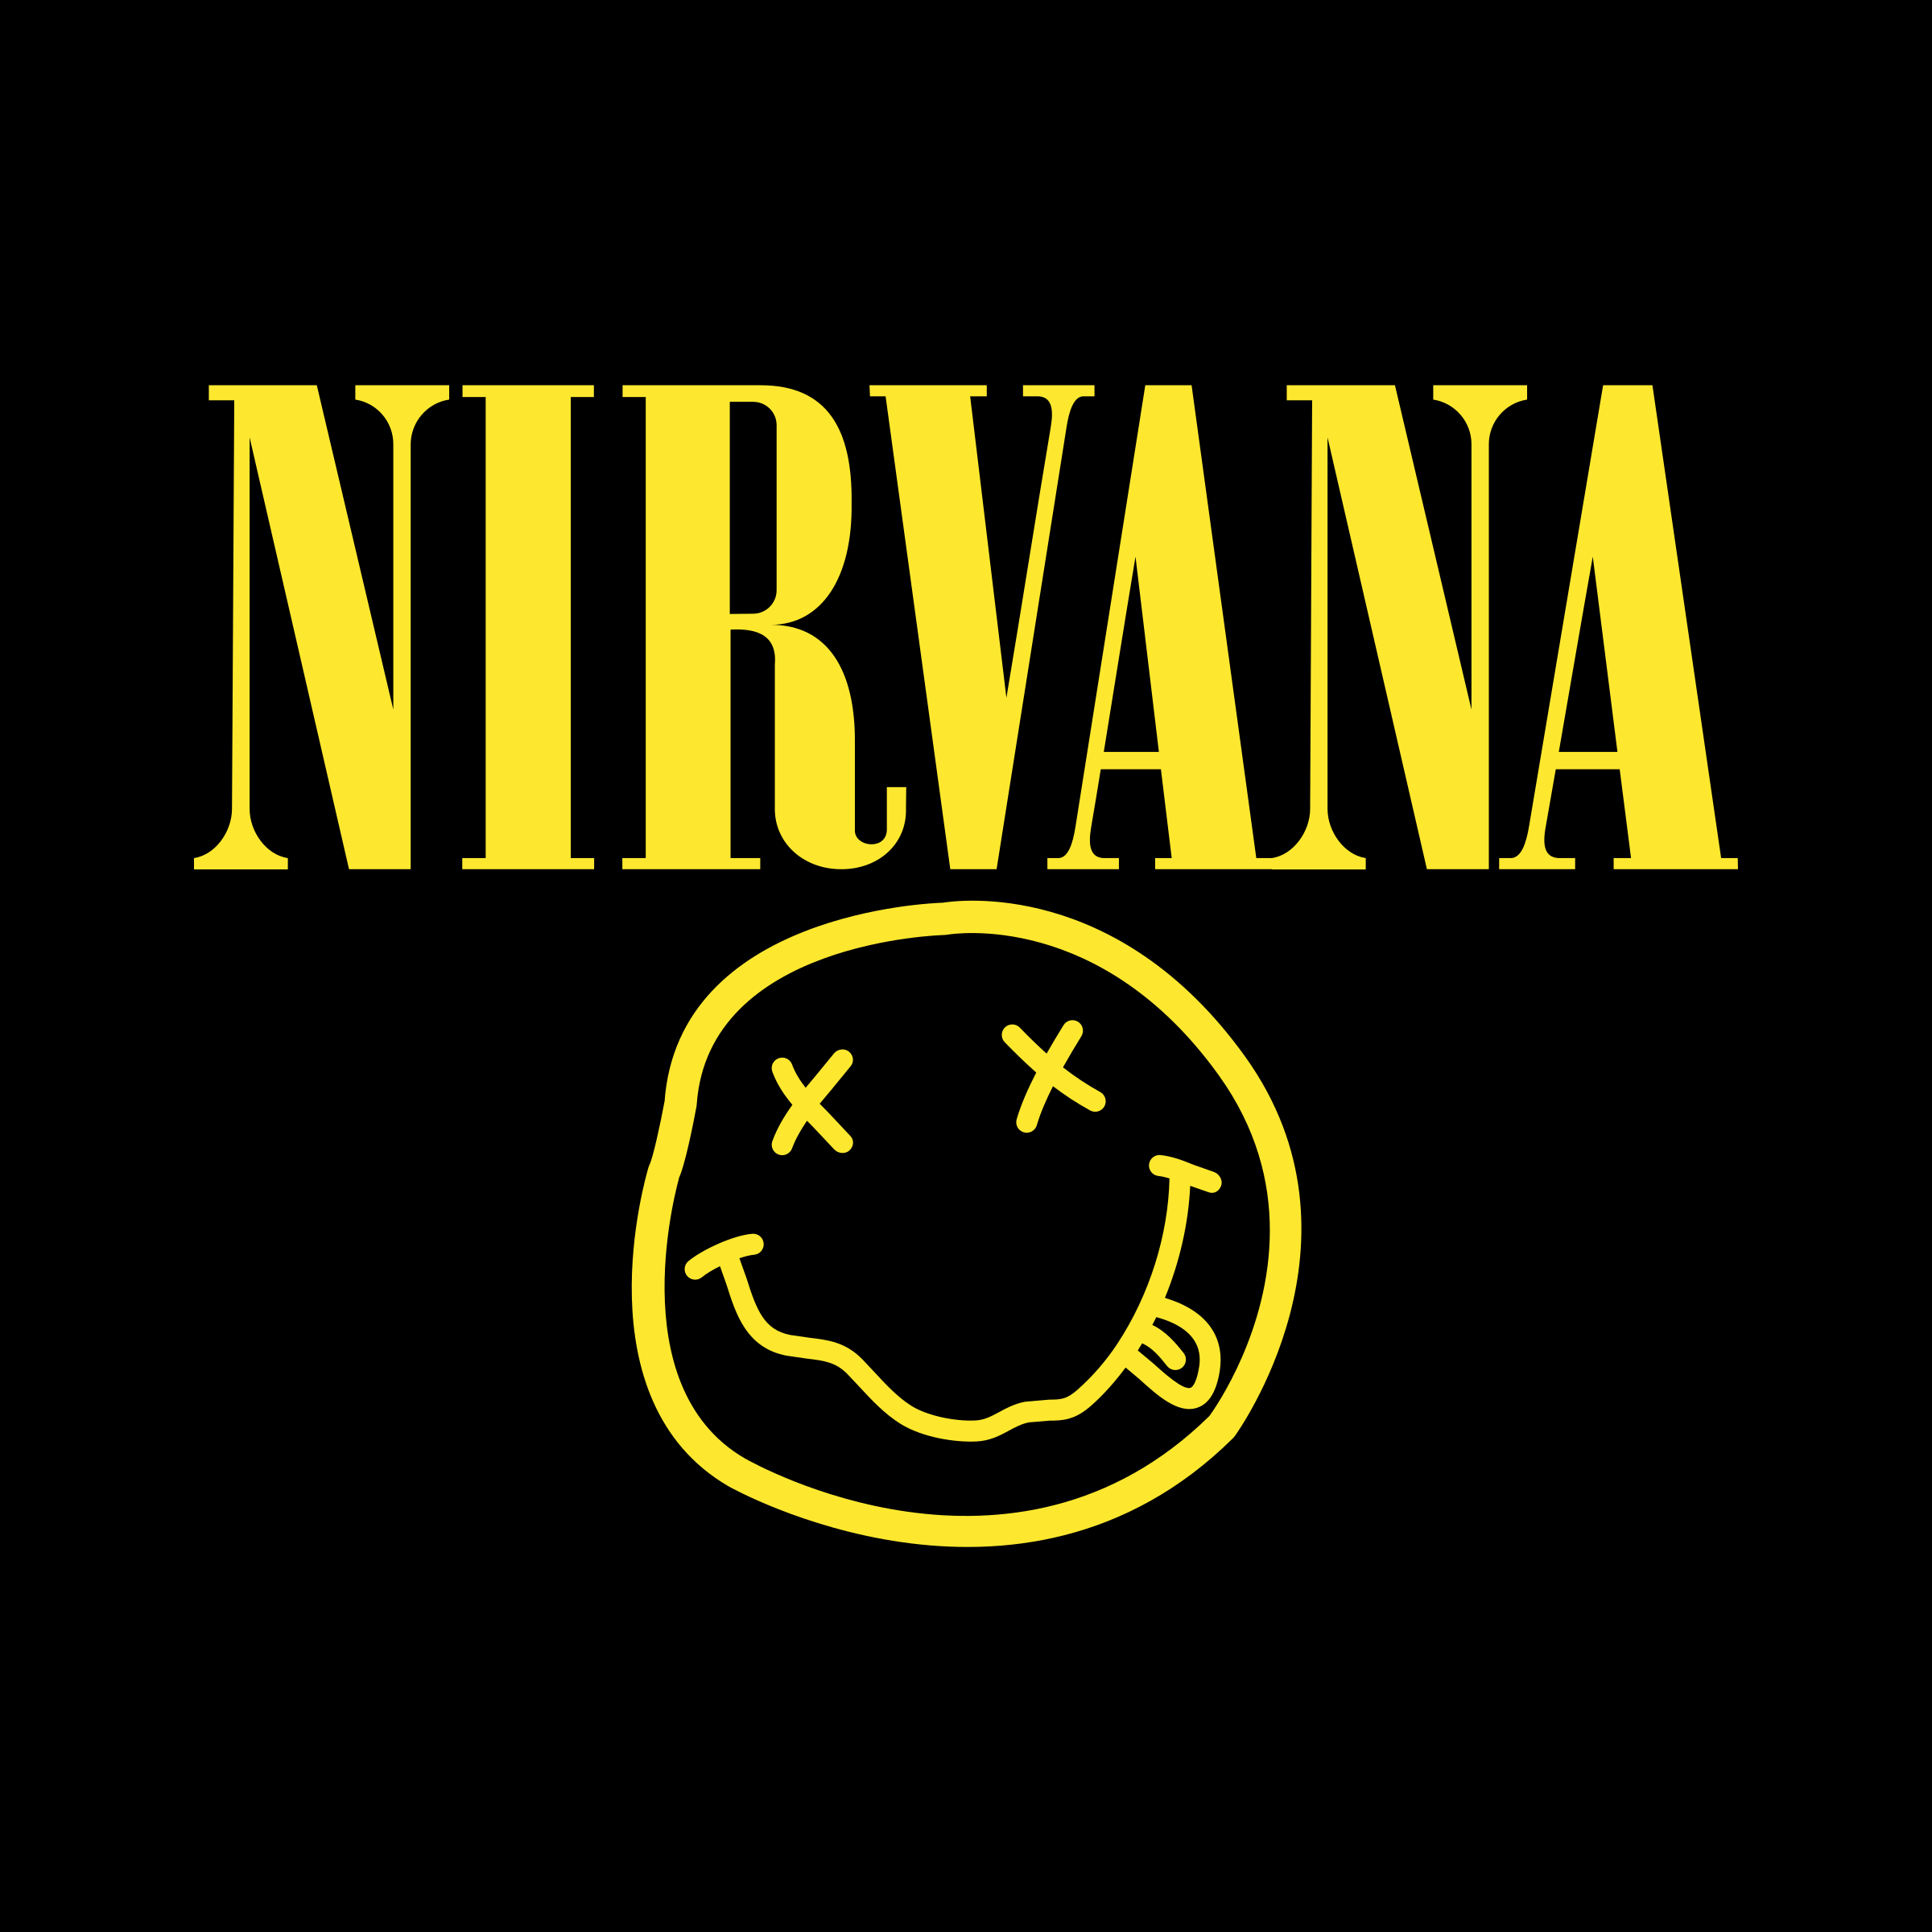 Logo Nirvana Png - KibrisPDR